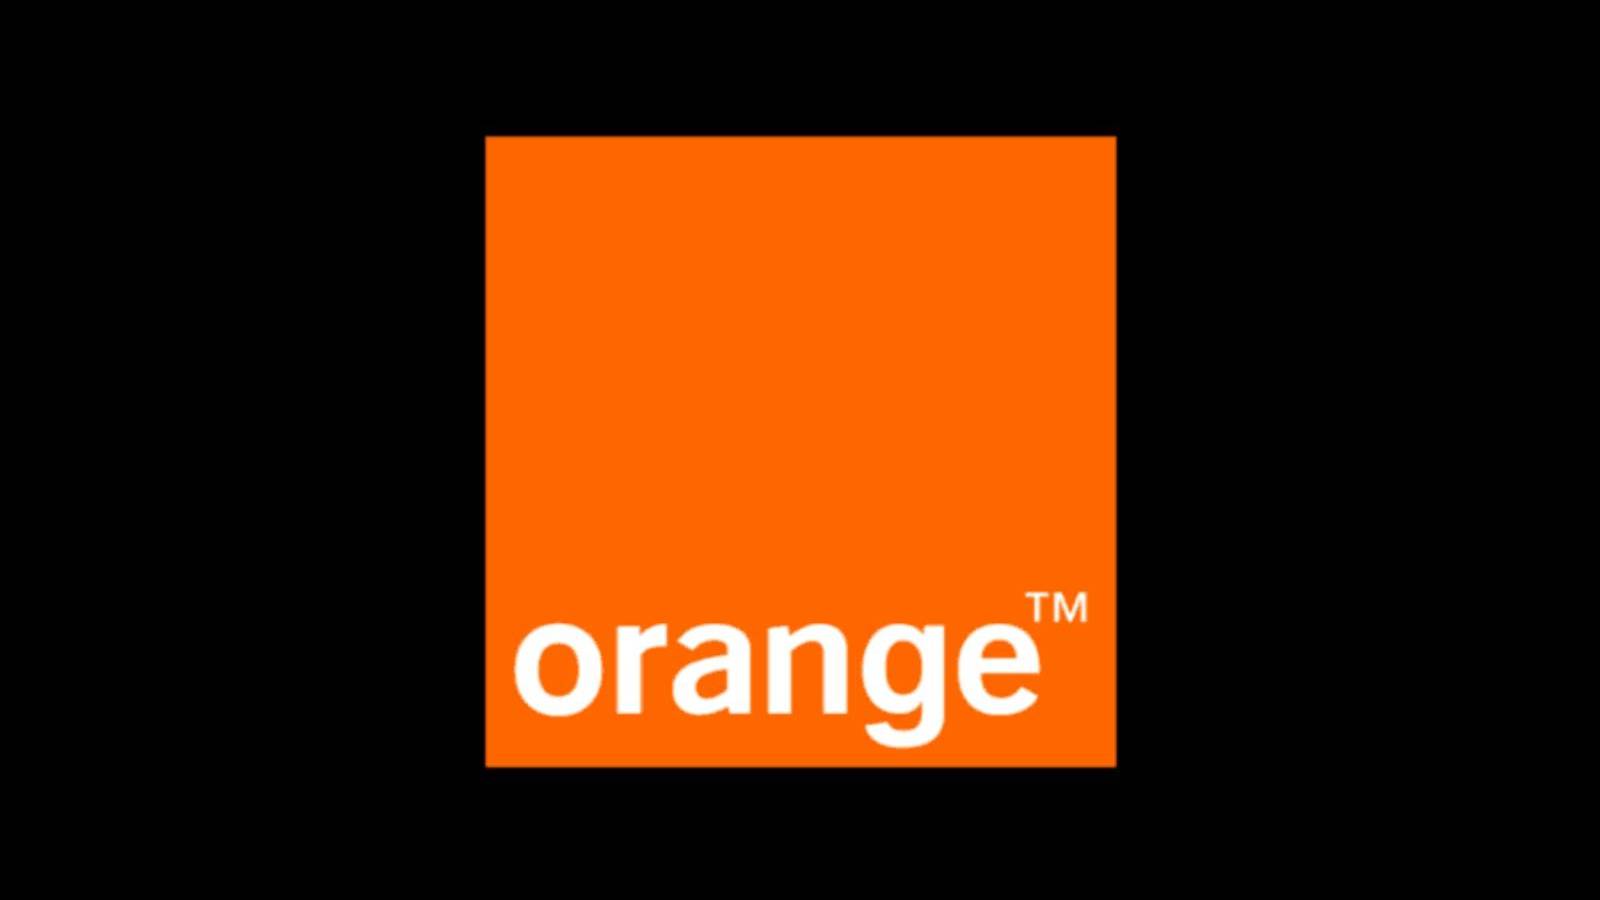 Recompensas Orange ofrecidas GRATIS a los clientes ahora